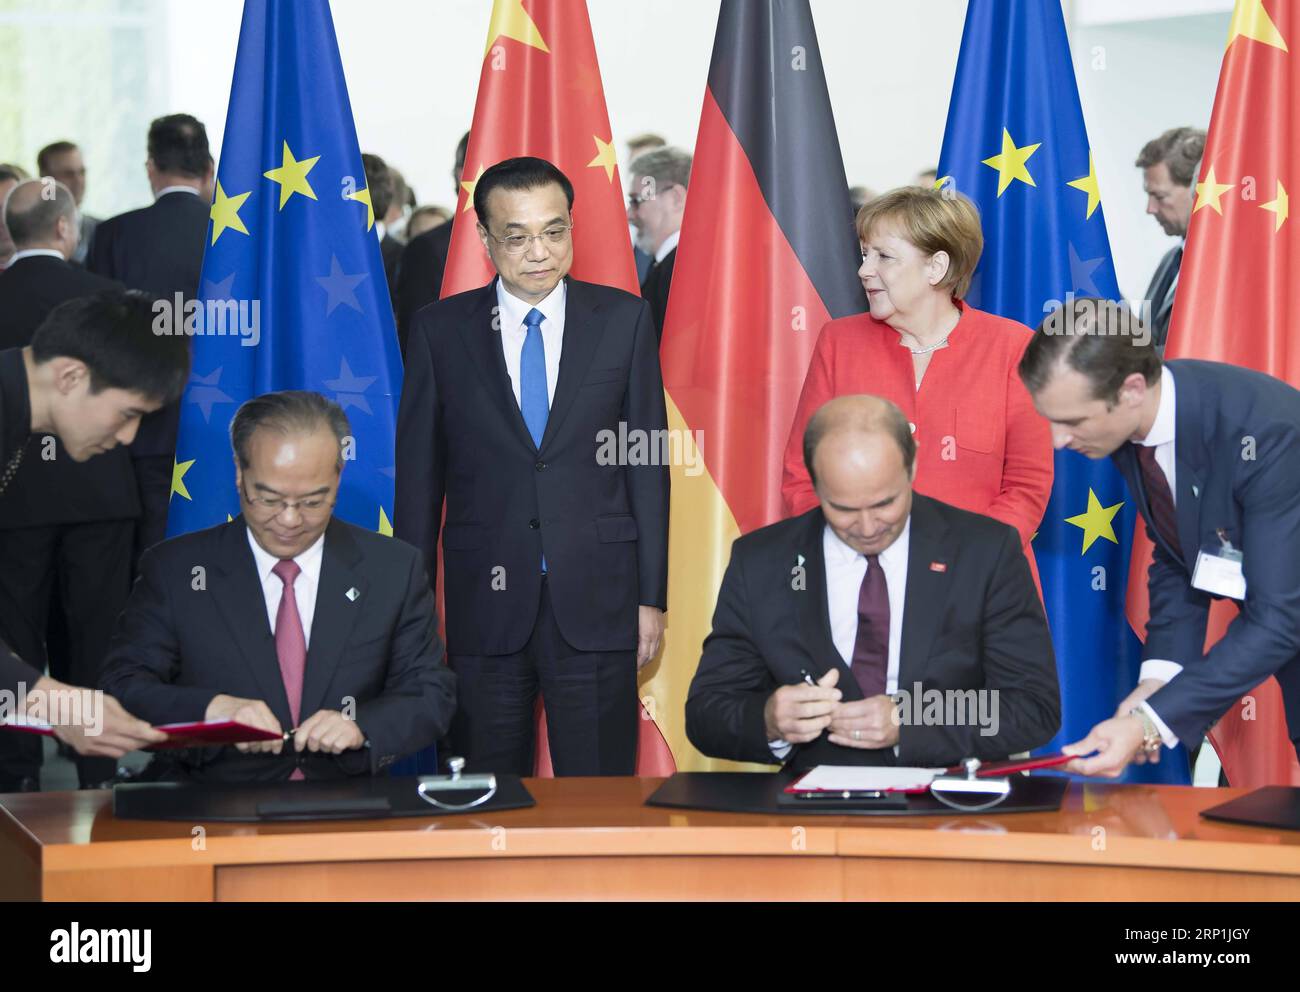 (180709) -- BERLINO, 9 luglio 2018 -- il Premier cinese li Keqiang (L, Back) e il cancelliere tedesco Angela Merkel (R, Back) testimoniano la firma di documenti di cooperazione bilaterale dopo il quinto ciclo di consultazioni intergovernative, co-presieduto dai due leader, a Berlino, Germania, 9 luglio 2018. ) (LMM) GERMANIA-BERLINO-CINA-LI KEQIANG-ANGELA MERKEL-CONSULTAZIONI INTERGOVERNATIVE LIXTAO PUBLICATIONXNOTXINXCHN Foto Stock